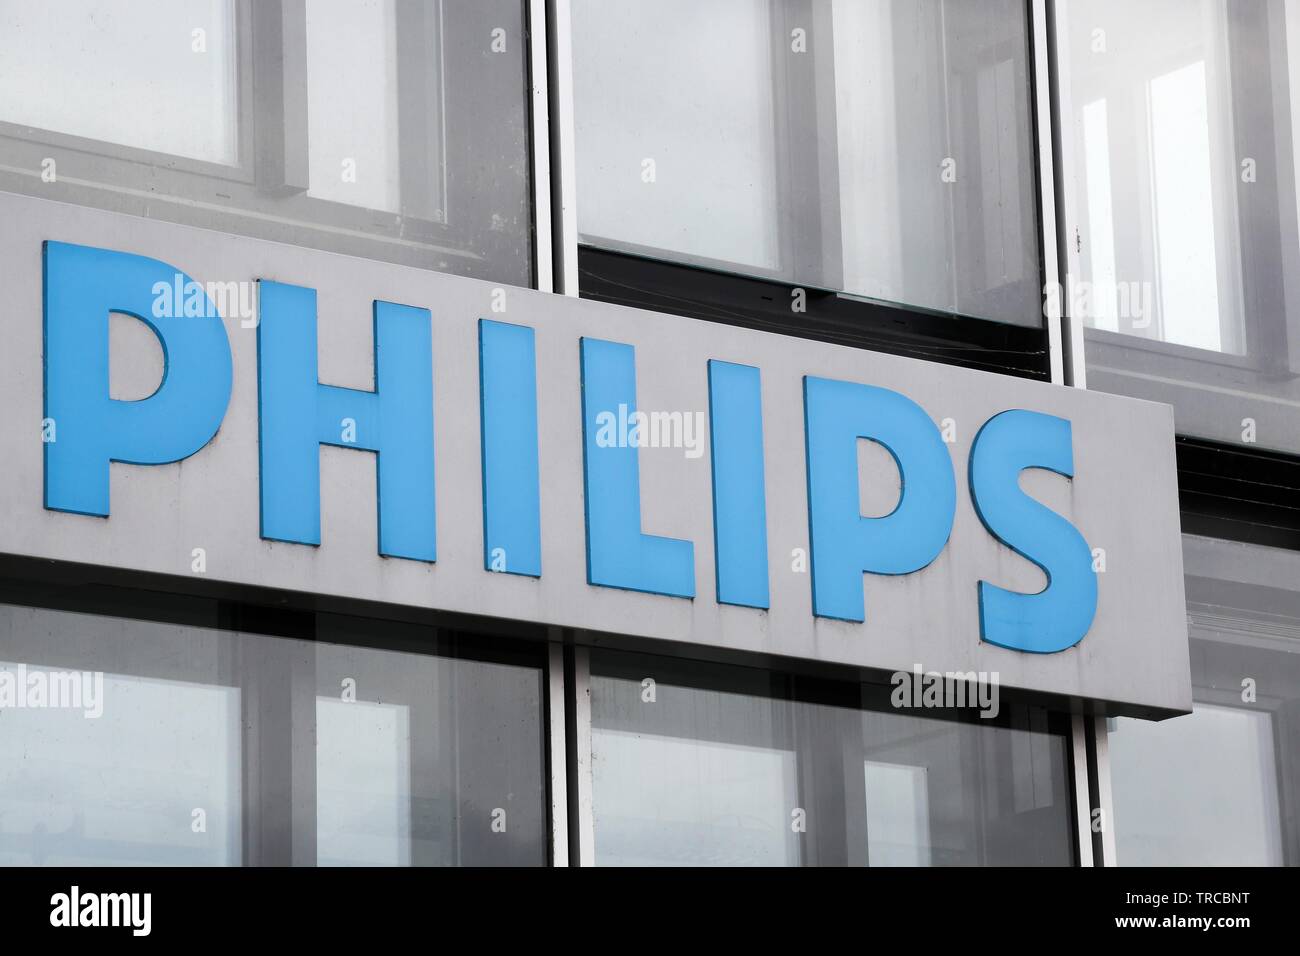 Cologne, Allemagne - le 2 juillet 2017 : logo Philips. Philips est une société de technologie néerlandaise basée à Amsterdam Banque D'Images